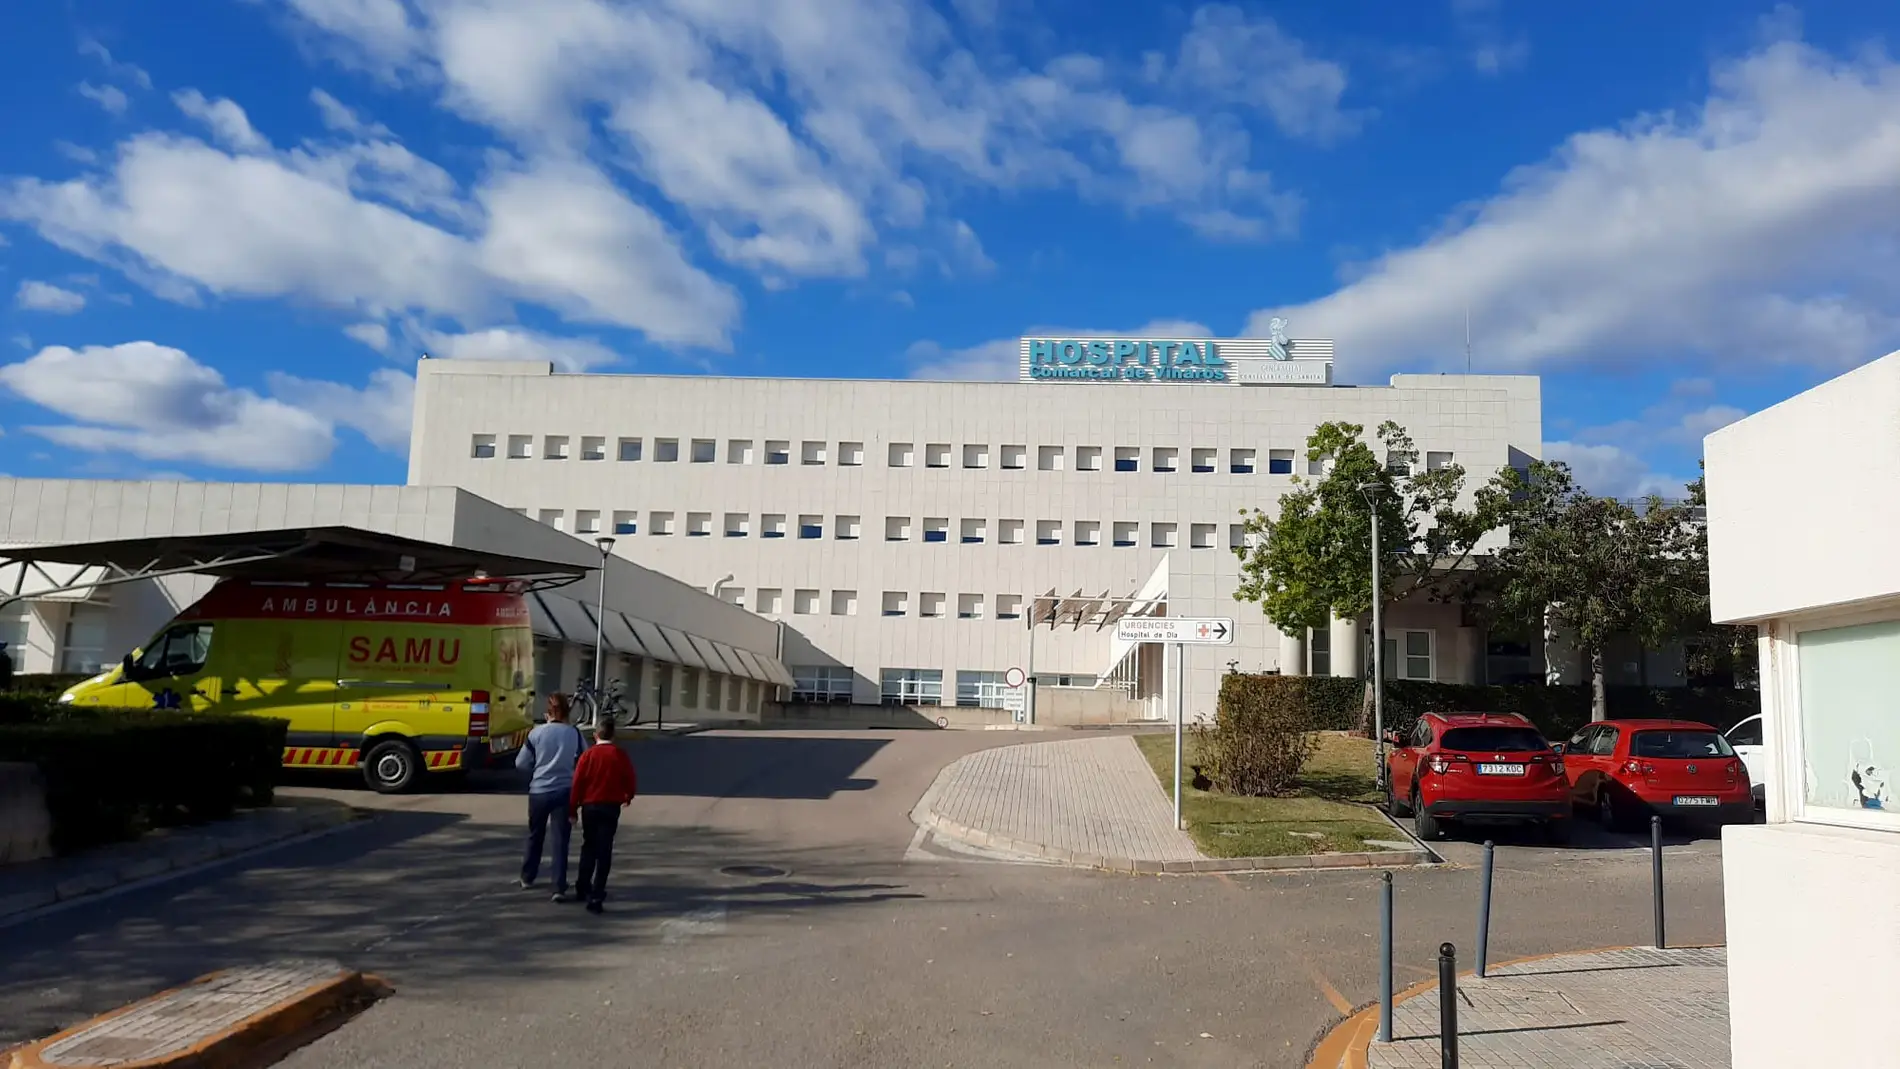 La falta de personal pone en jaque al Hospital de Vinaròs de cara a diciembre 